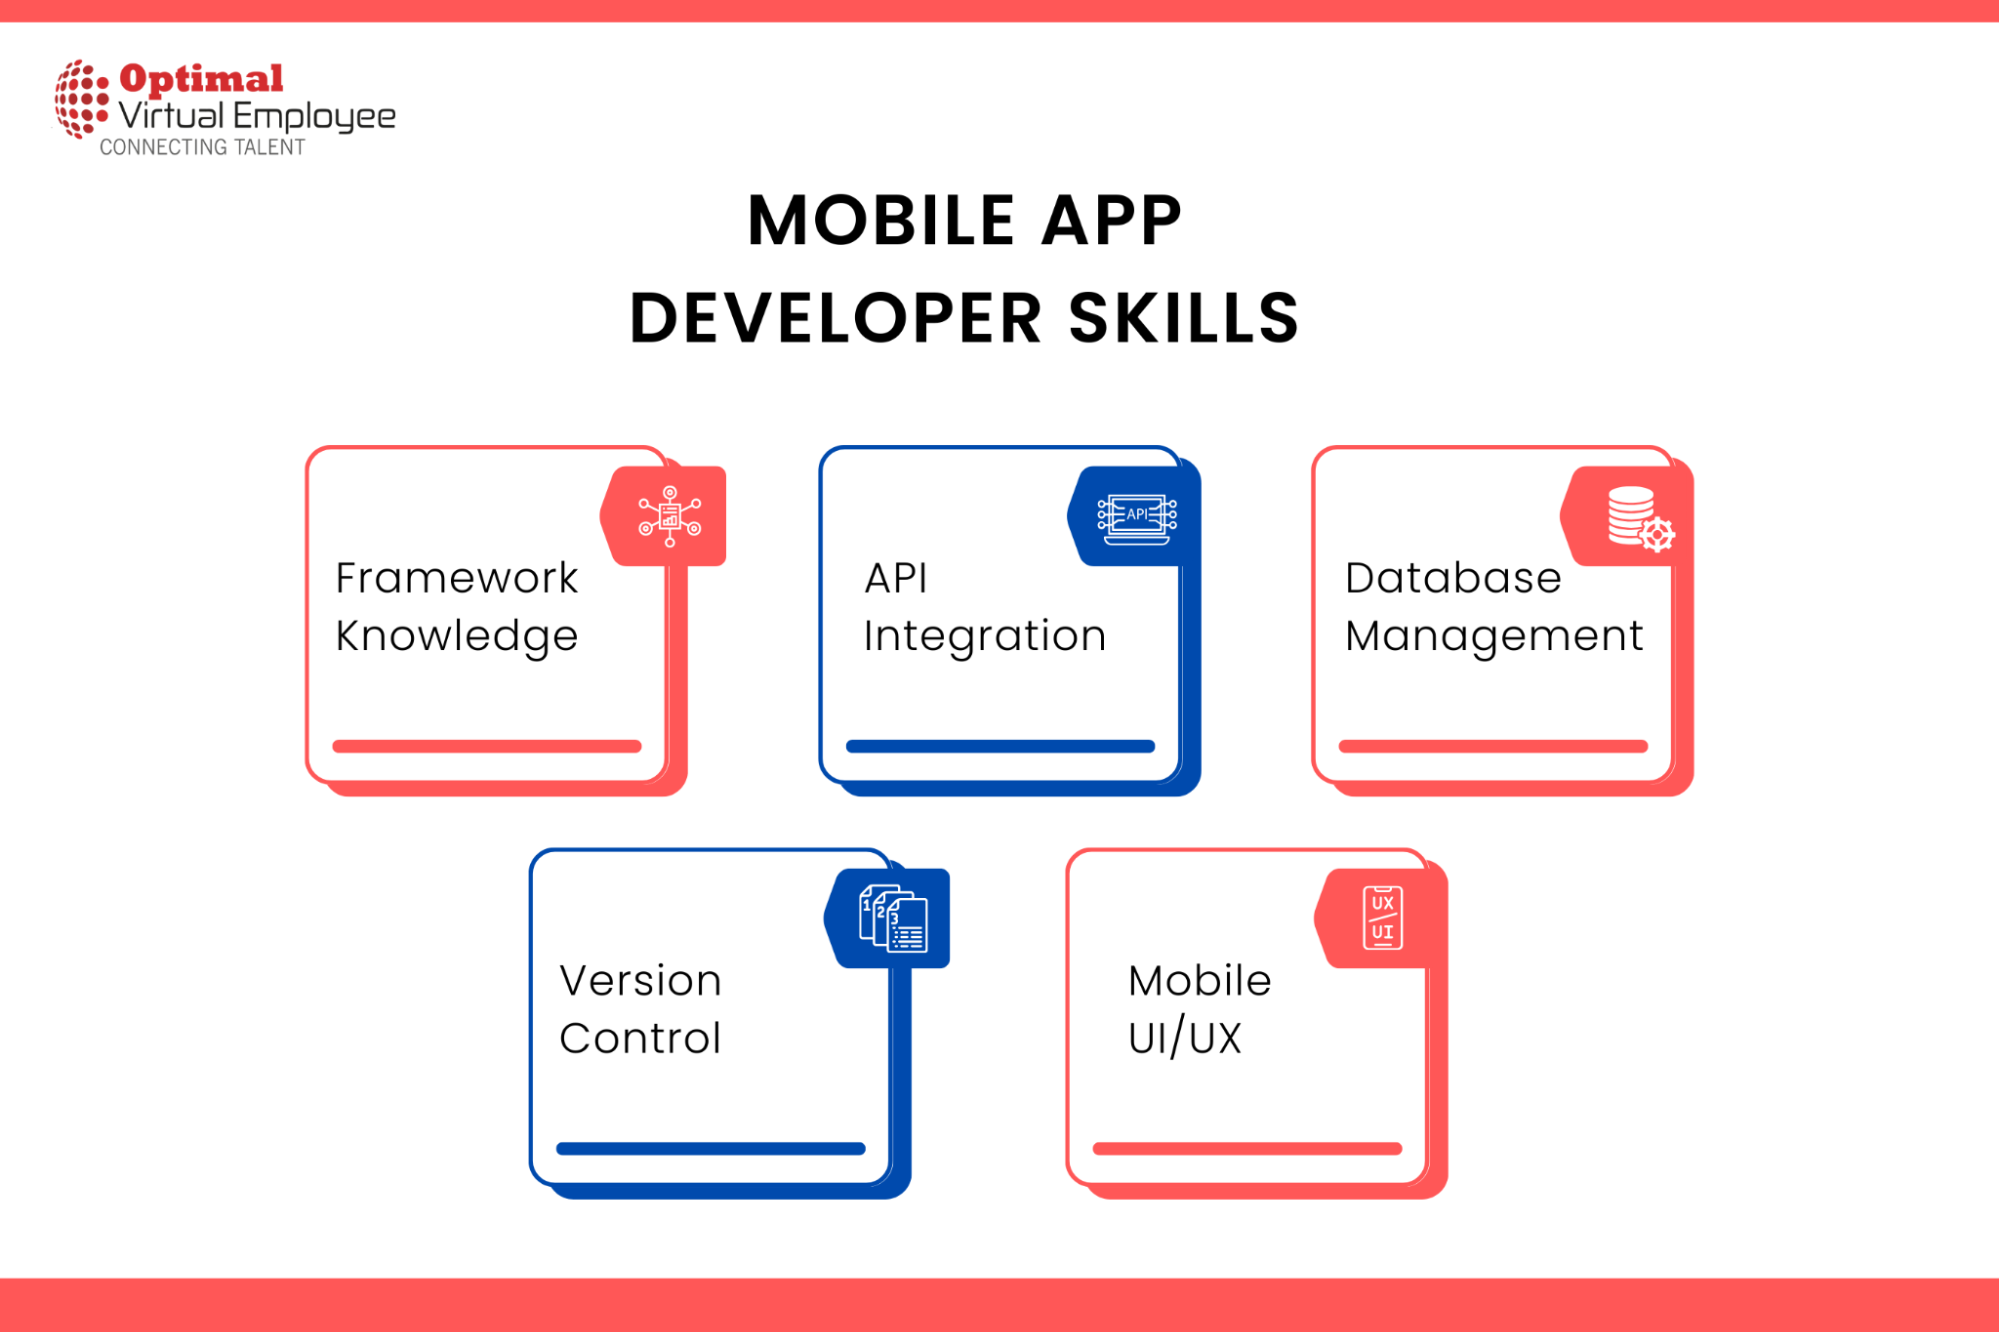 Skills of Mobile App Developers